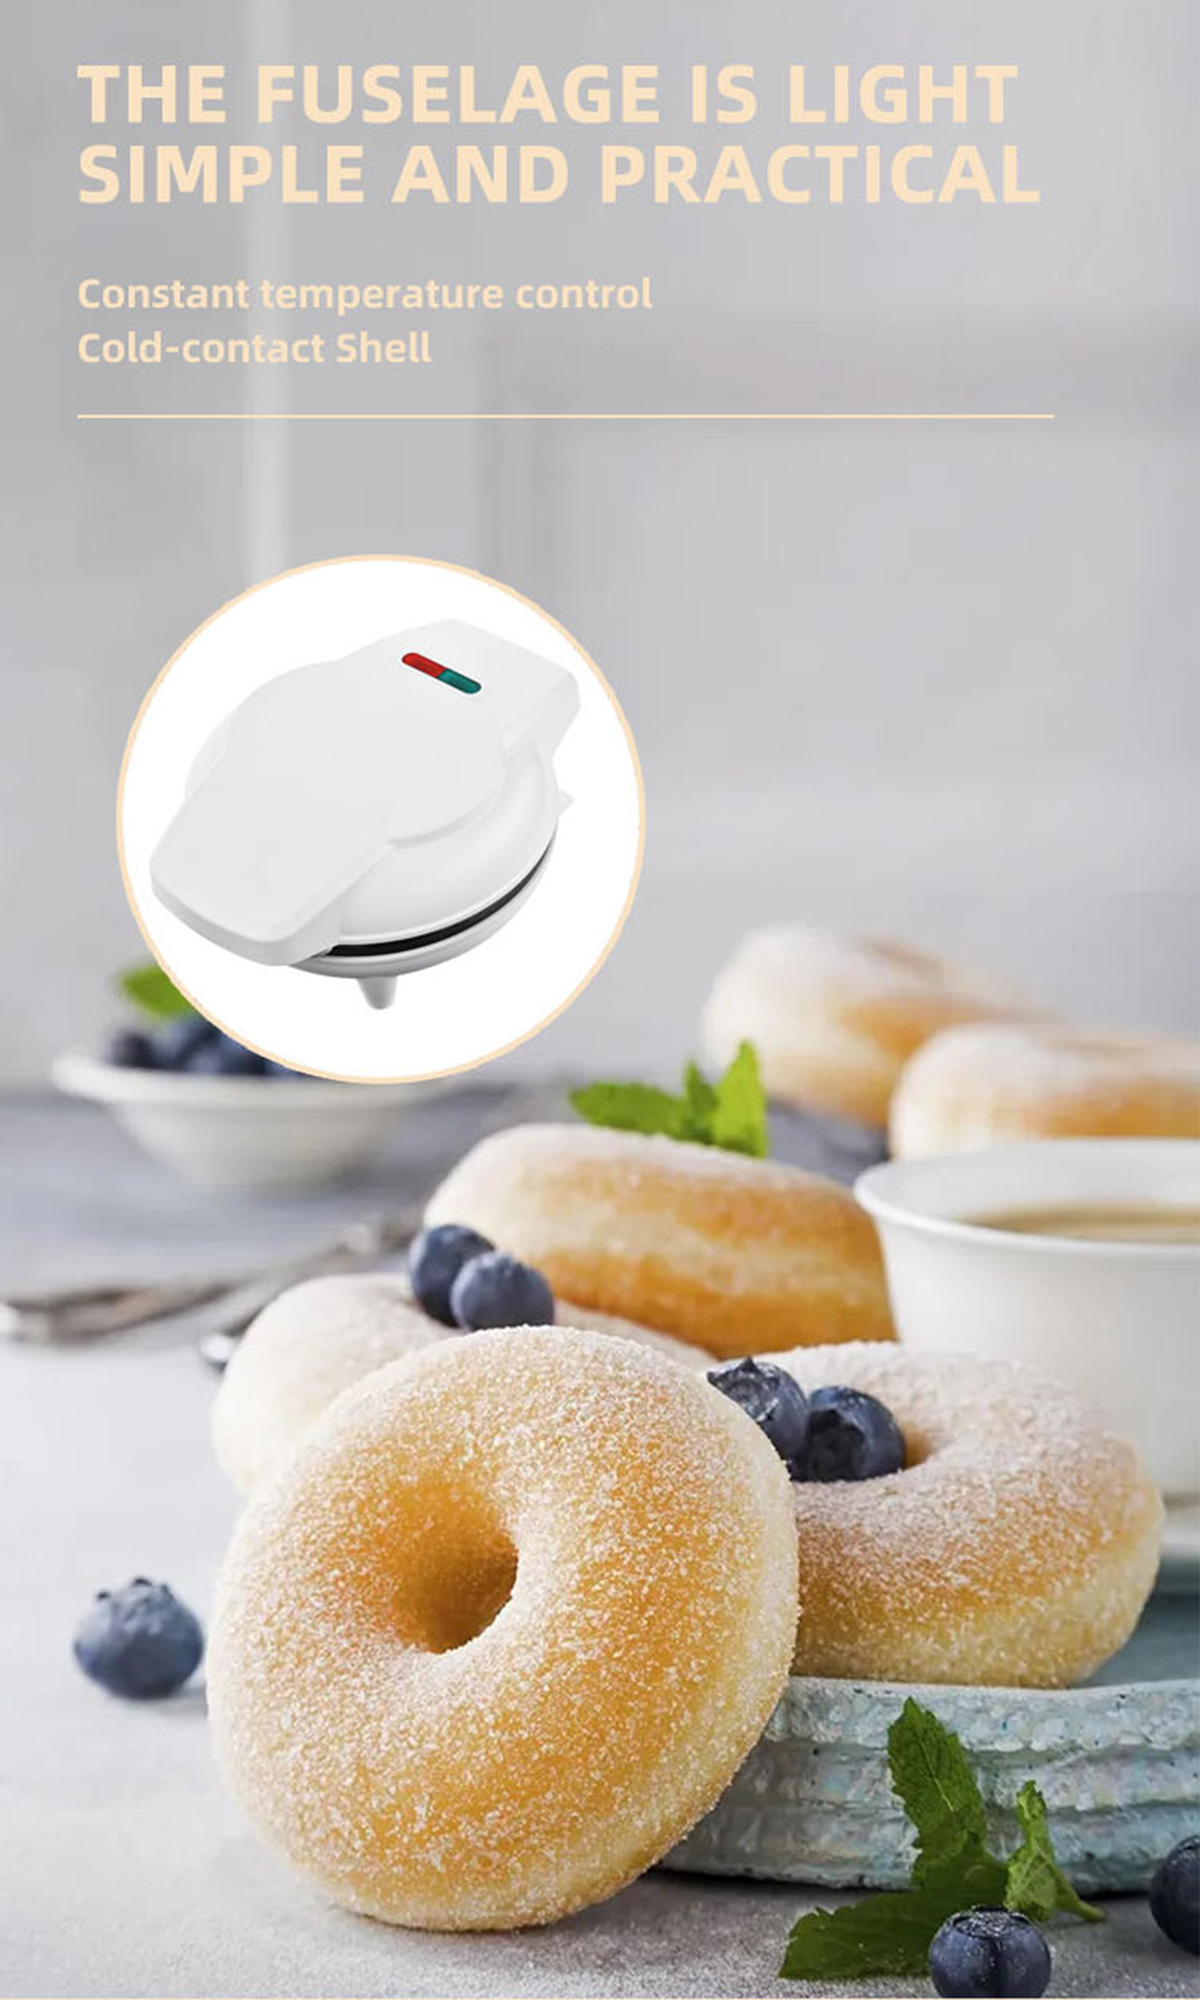 BRIGHTAKE 7-Loch-Donut-Maker Frühstückserlebnis - Rot Donutmaker Genießer für Das